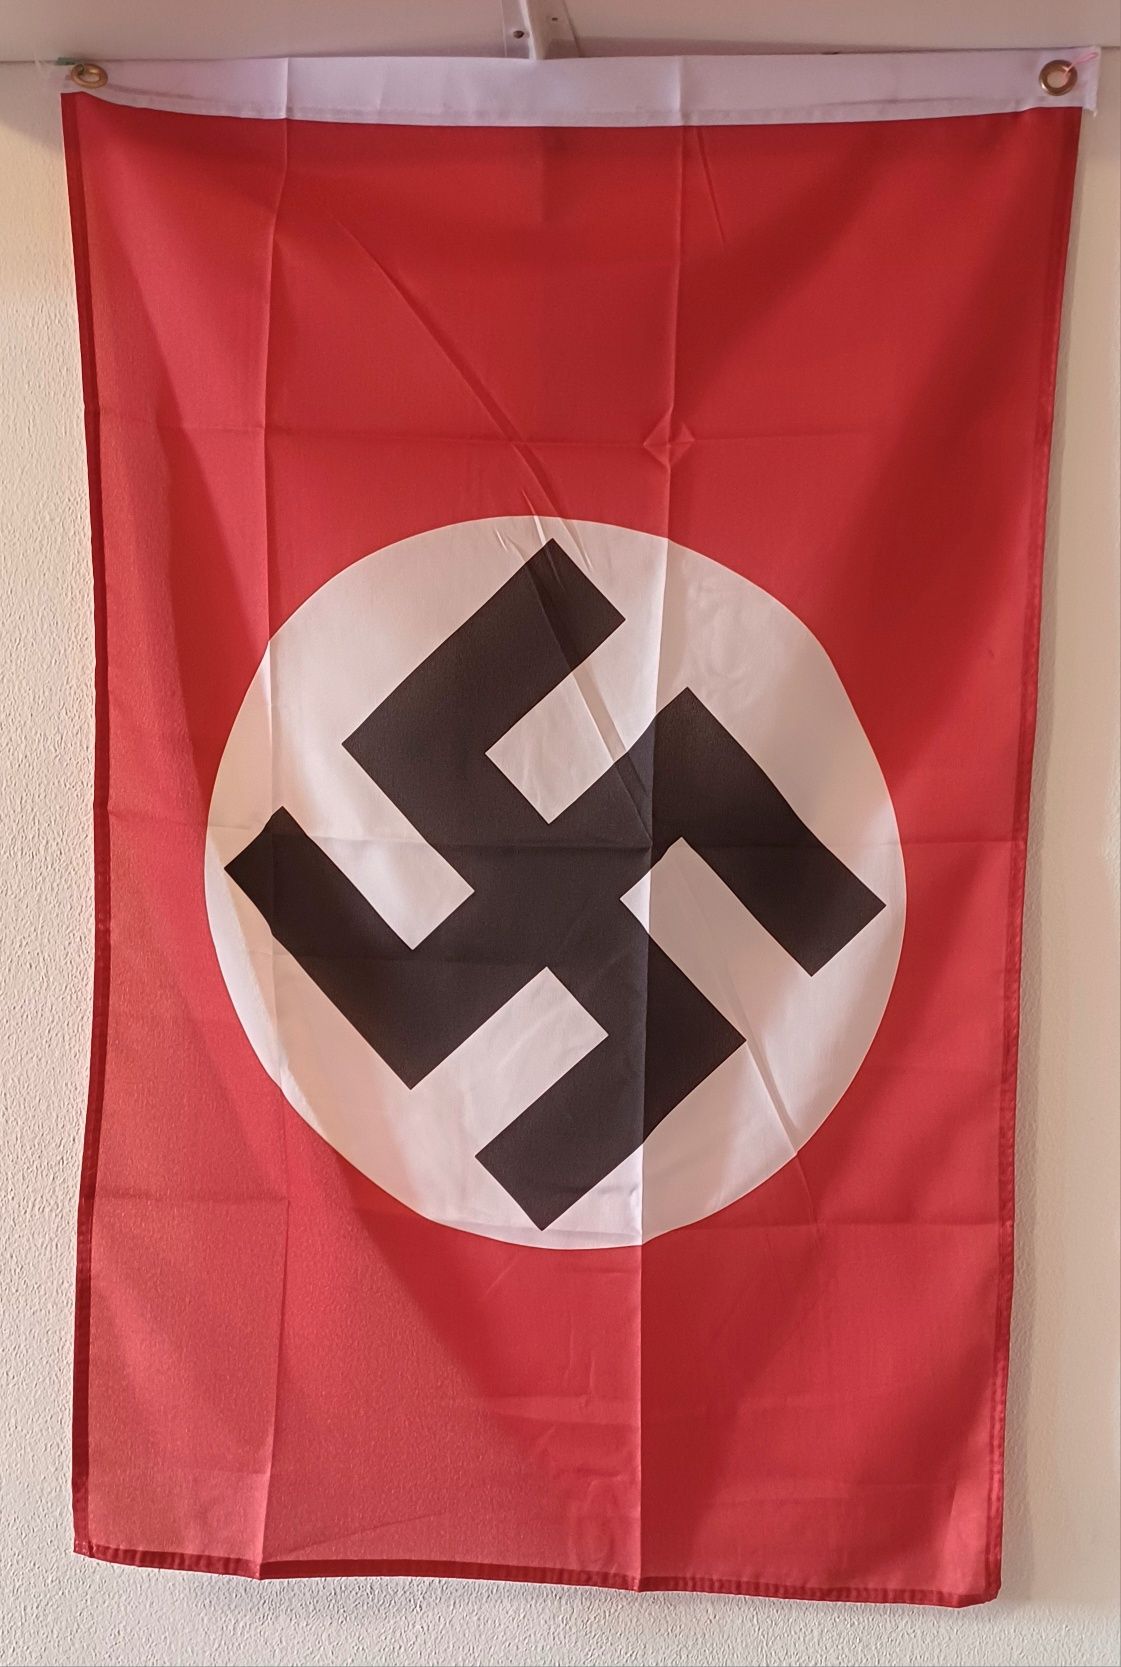 PROMOÇÃO--Bandeira NSDAP pequena, medidas 90 × 60 cm Alemanha nazi-suá